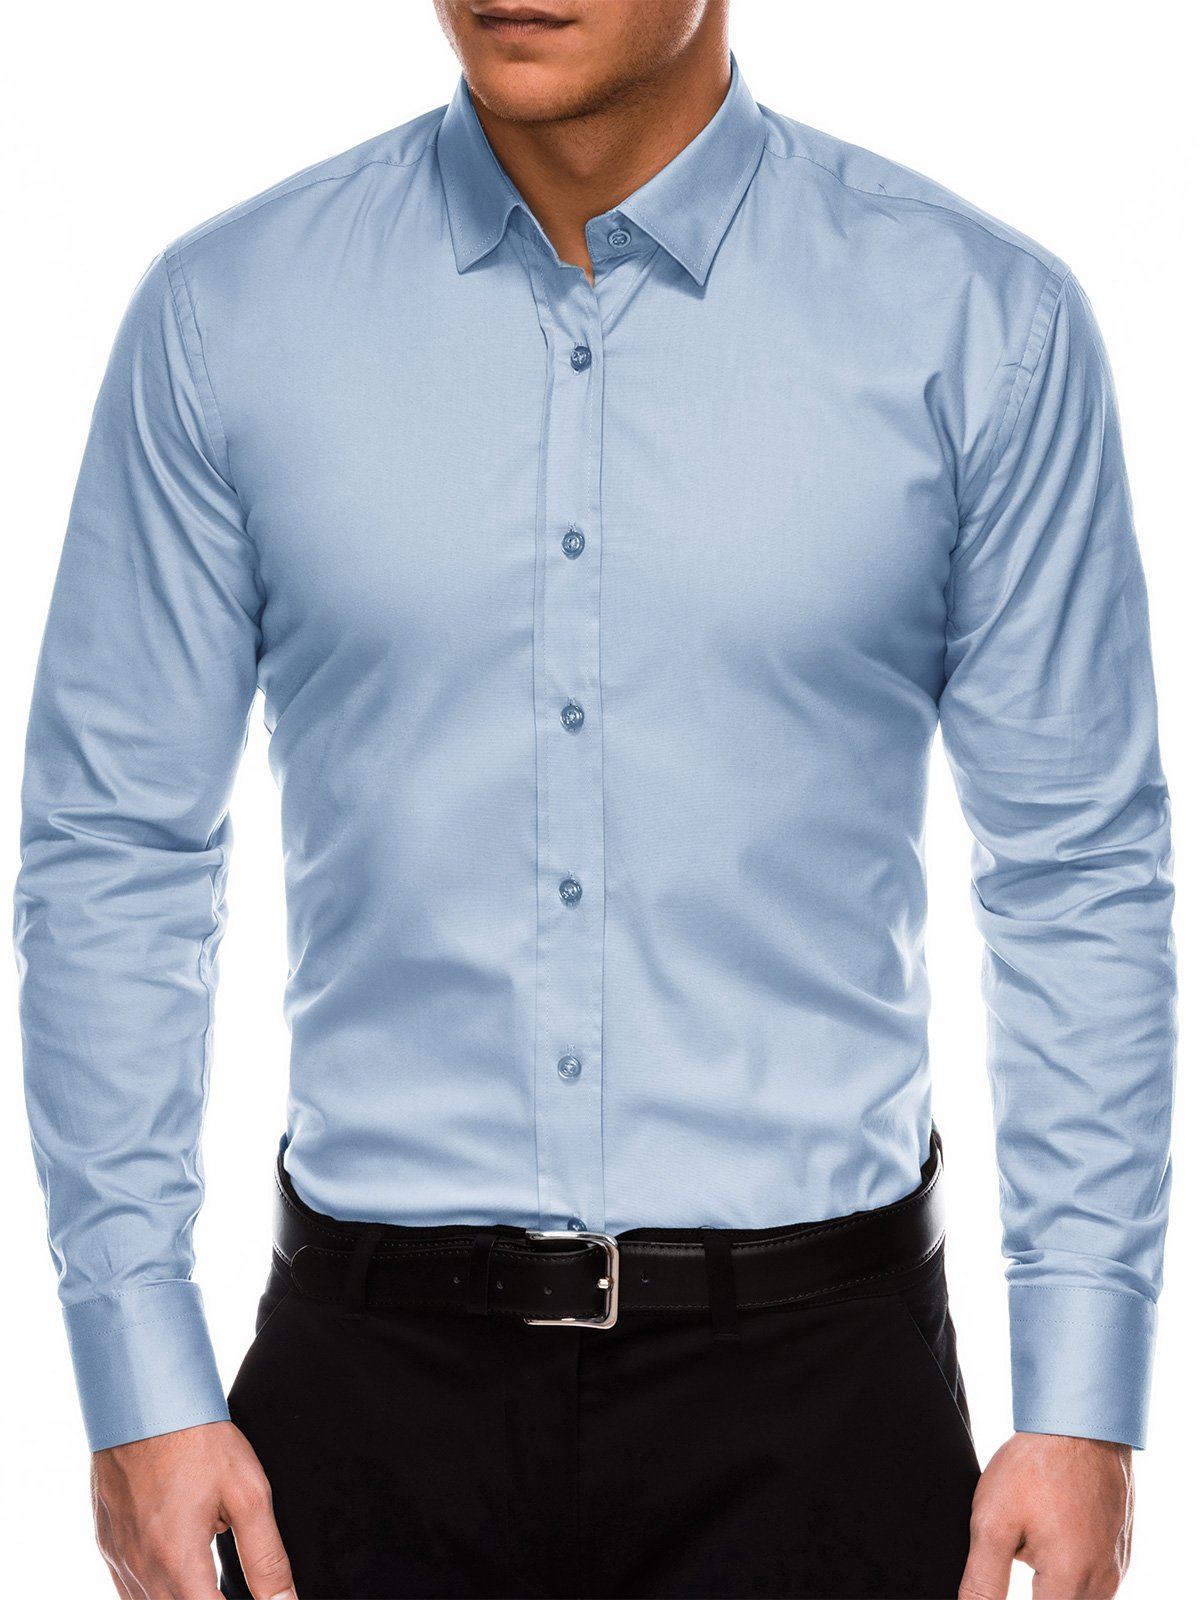 Men's regular shirt with long sleeves K505 - light blue | MODONE ...